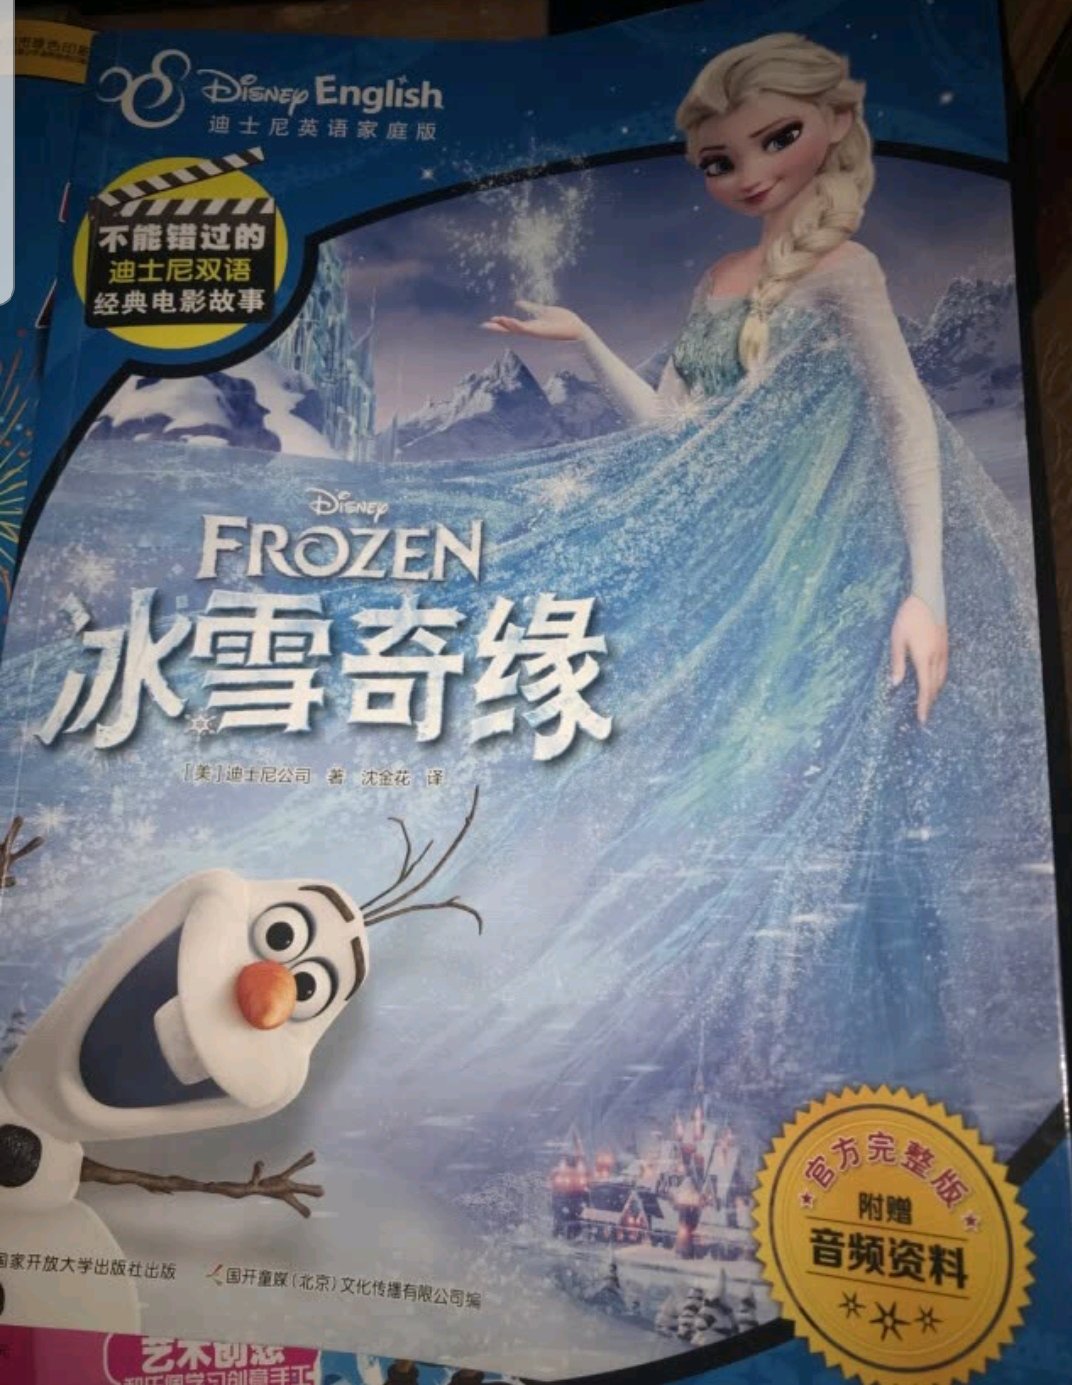 孩子特别喜欢冰雪奇缘这部电影，看了好几遍，书也很爱看